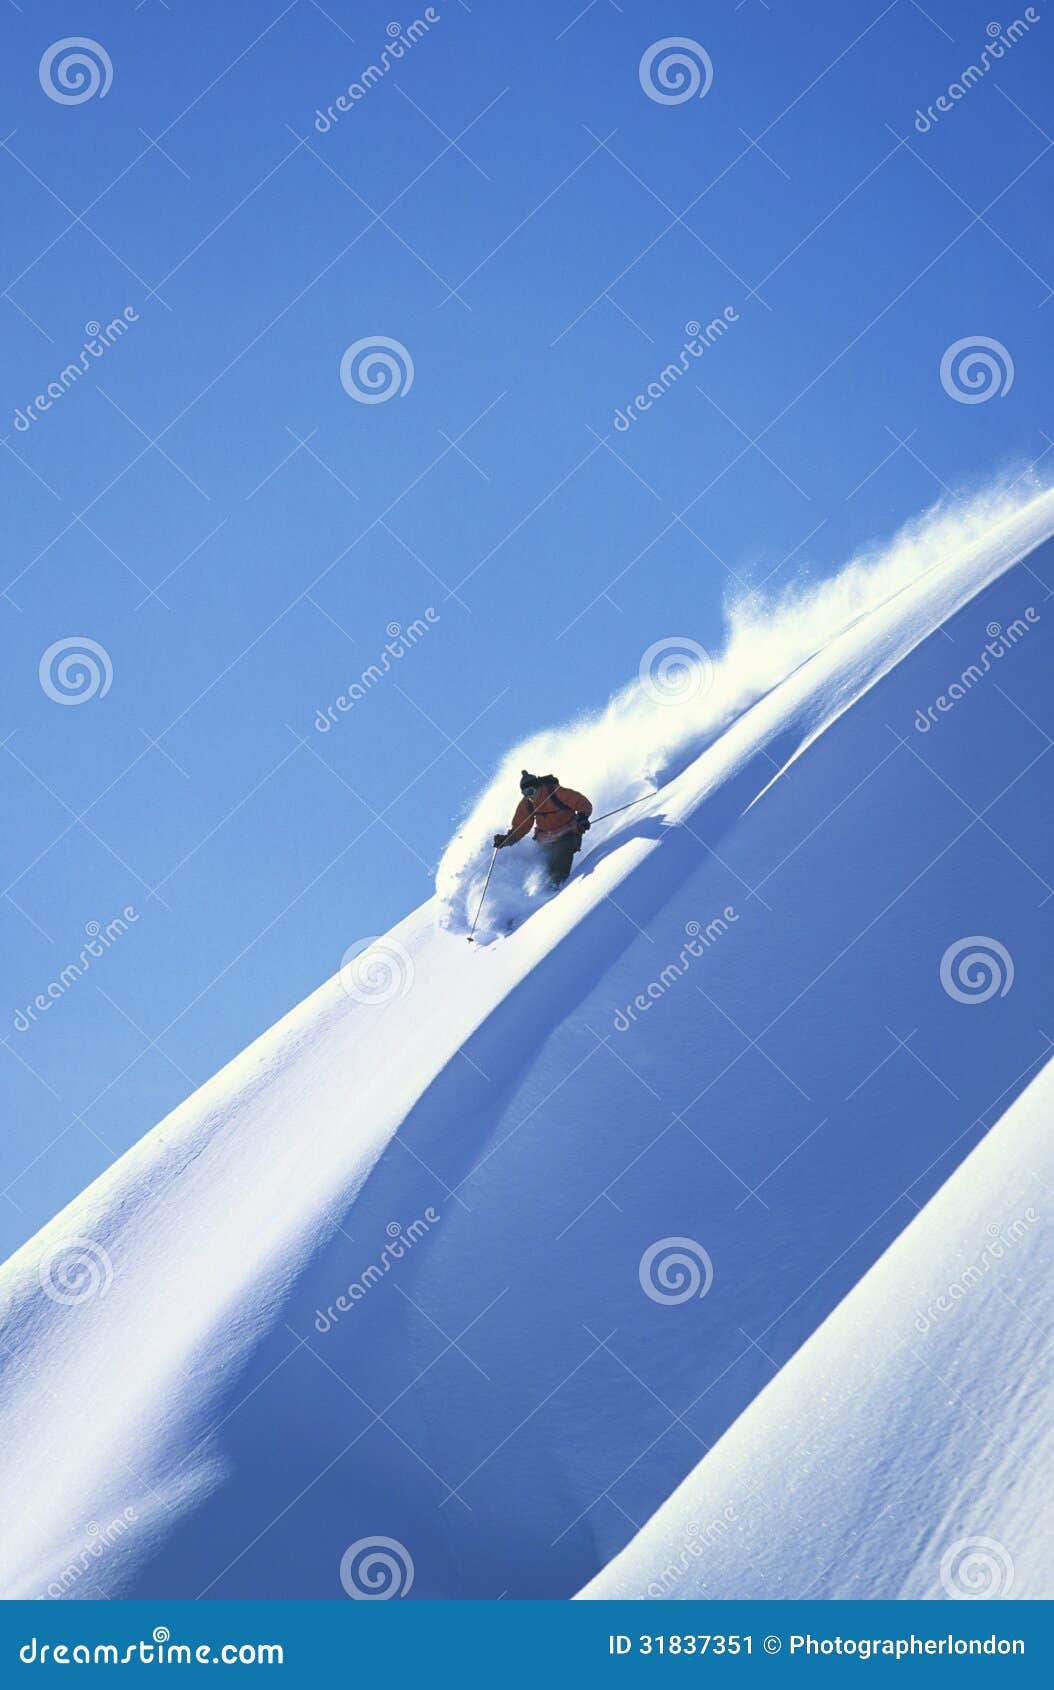 skier skiing on steep slope